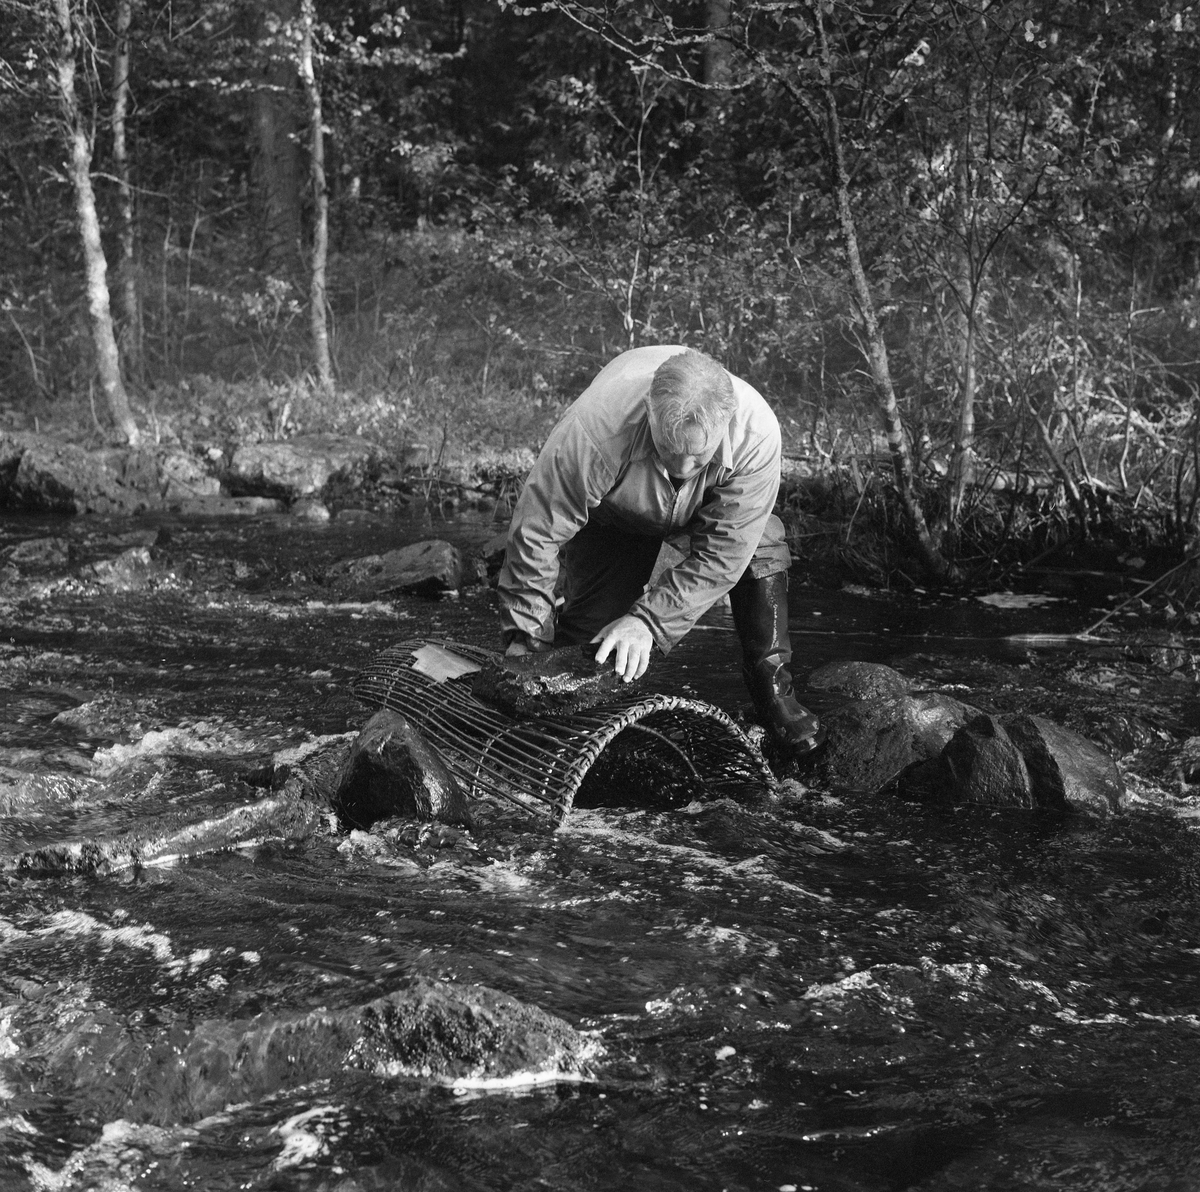 Skogvokter Simen Weideborg setter ut mortkuper i Sagåa, evt. Svartelva nær Rokosjøen, Løten, Hedmark. Mortfiske. Fiske etter mort. Juni 1970.